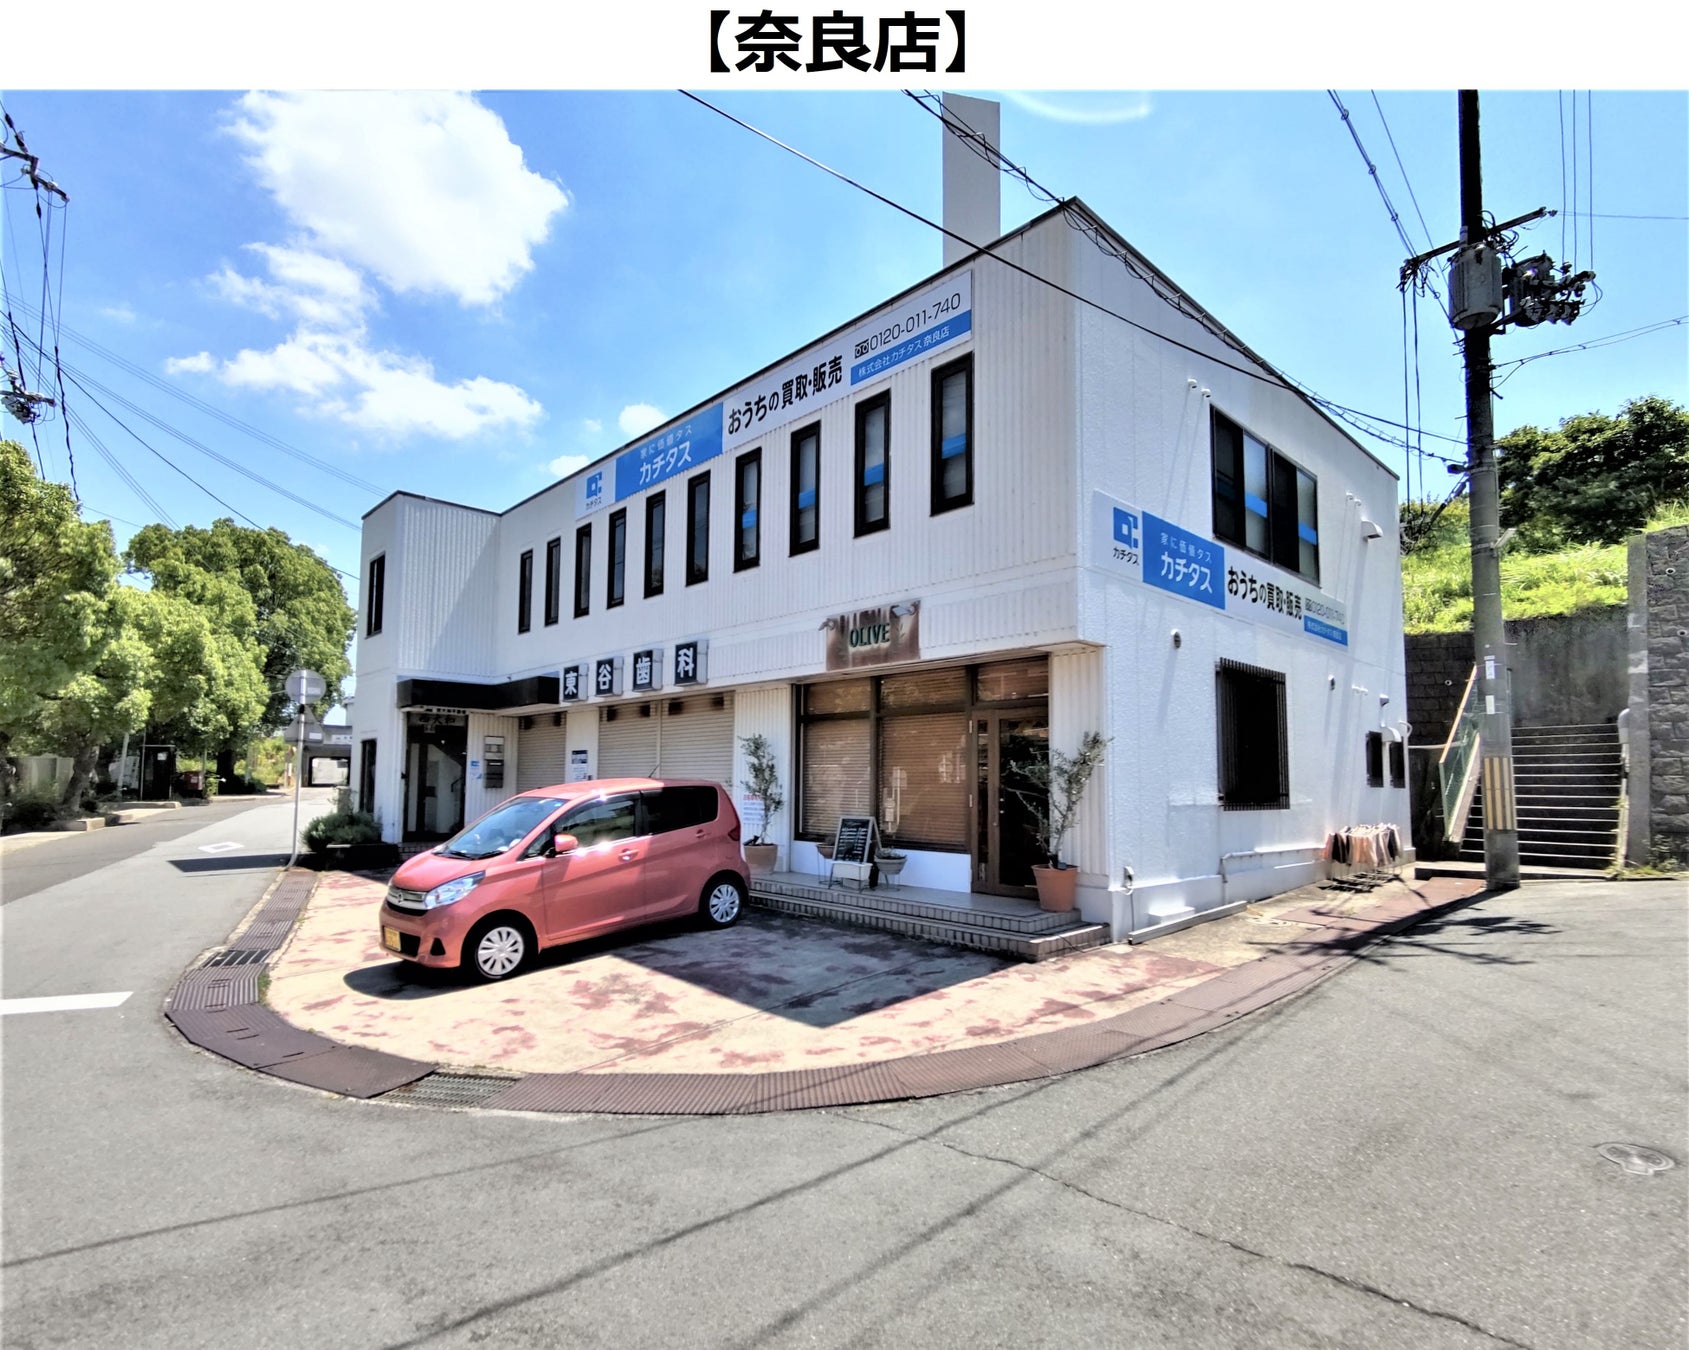 中古住宅買取再生業界No1*¹のカチタスが、未活用空き家率が高い奈良県内に初めて「奈良店」オープンのサブ画像1